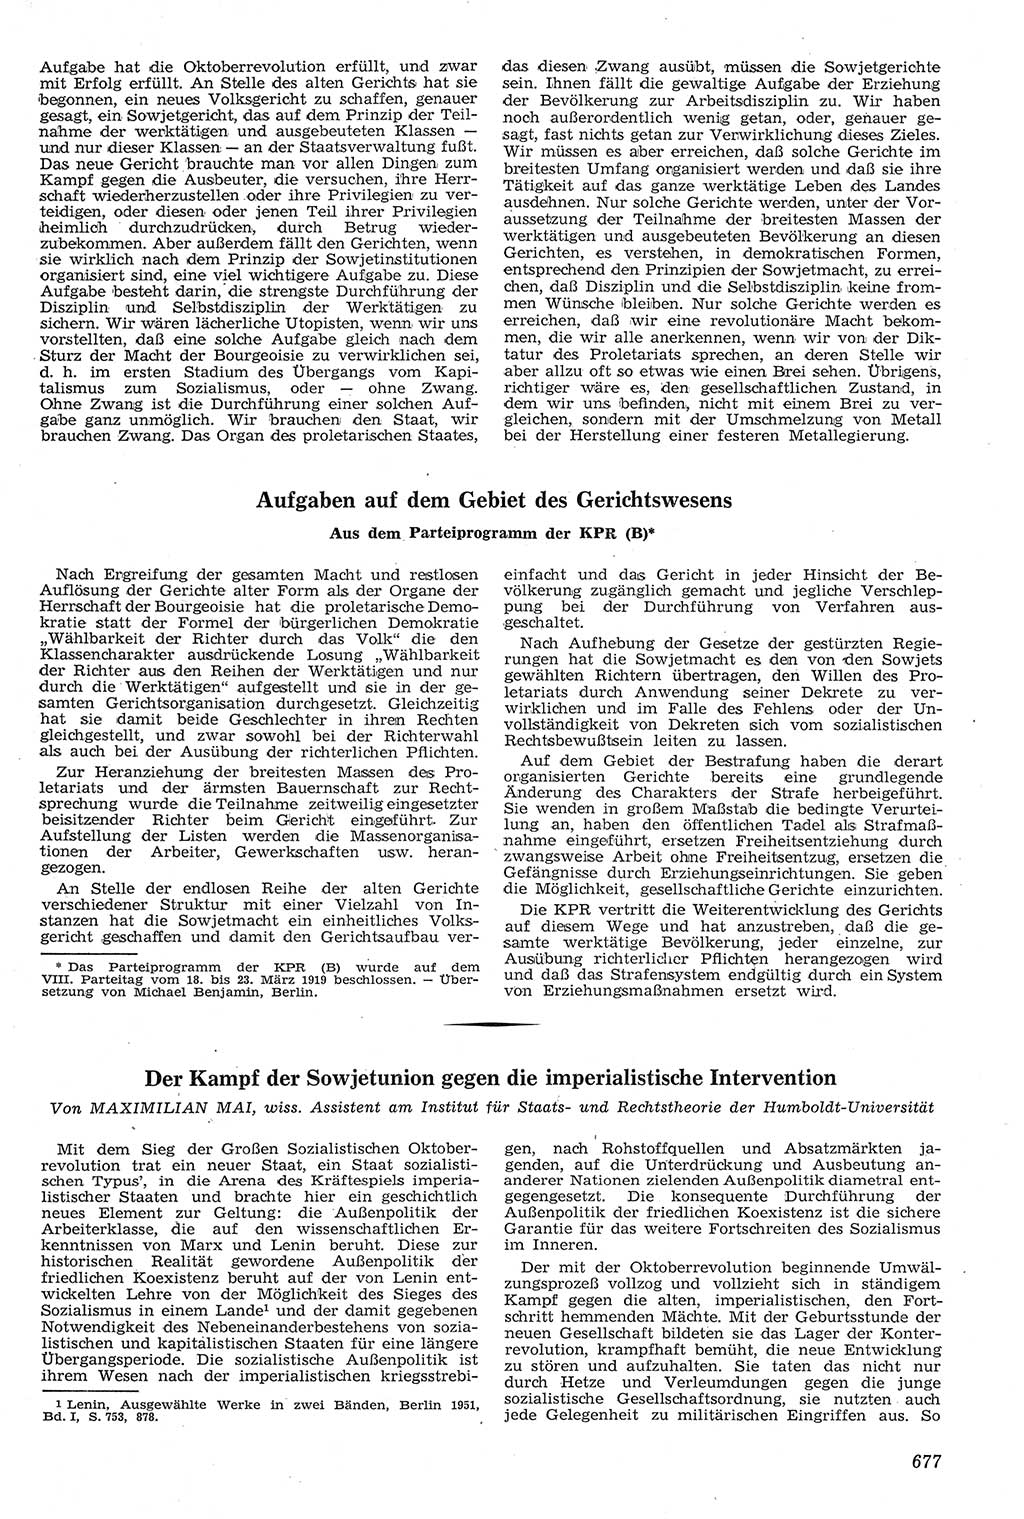 Neue Justiz (NJ), Zeitschrift für Recht und Rechtswissenschaft [Deutsche Demokratische Republik (DDR)], 11. Jahrgang 1957, Seite 677 (NJ DDR 1957, S. 677)